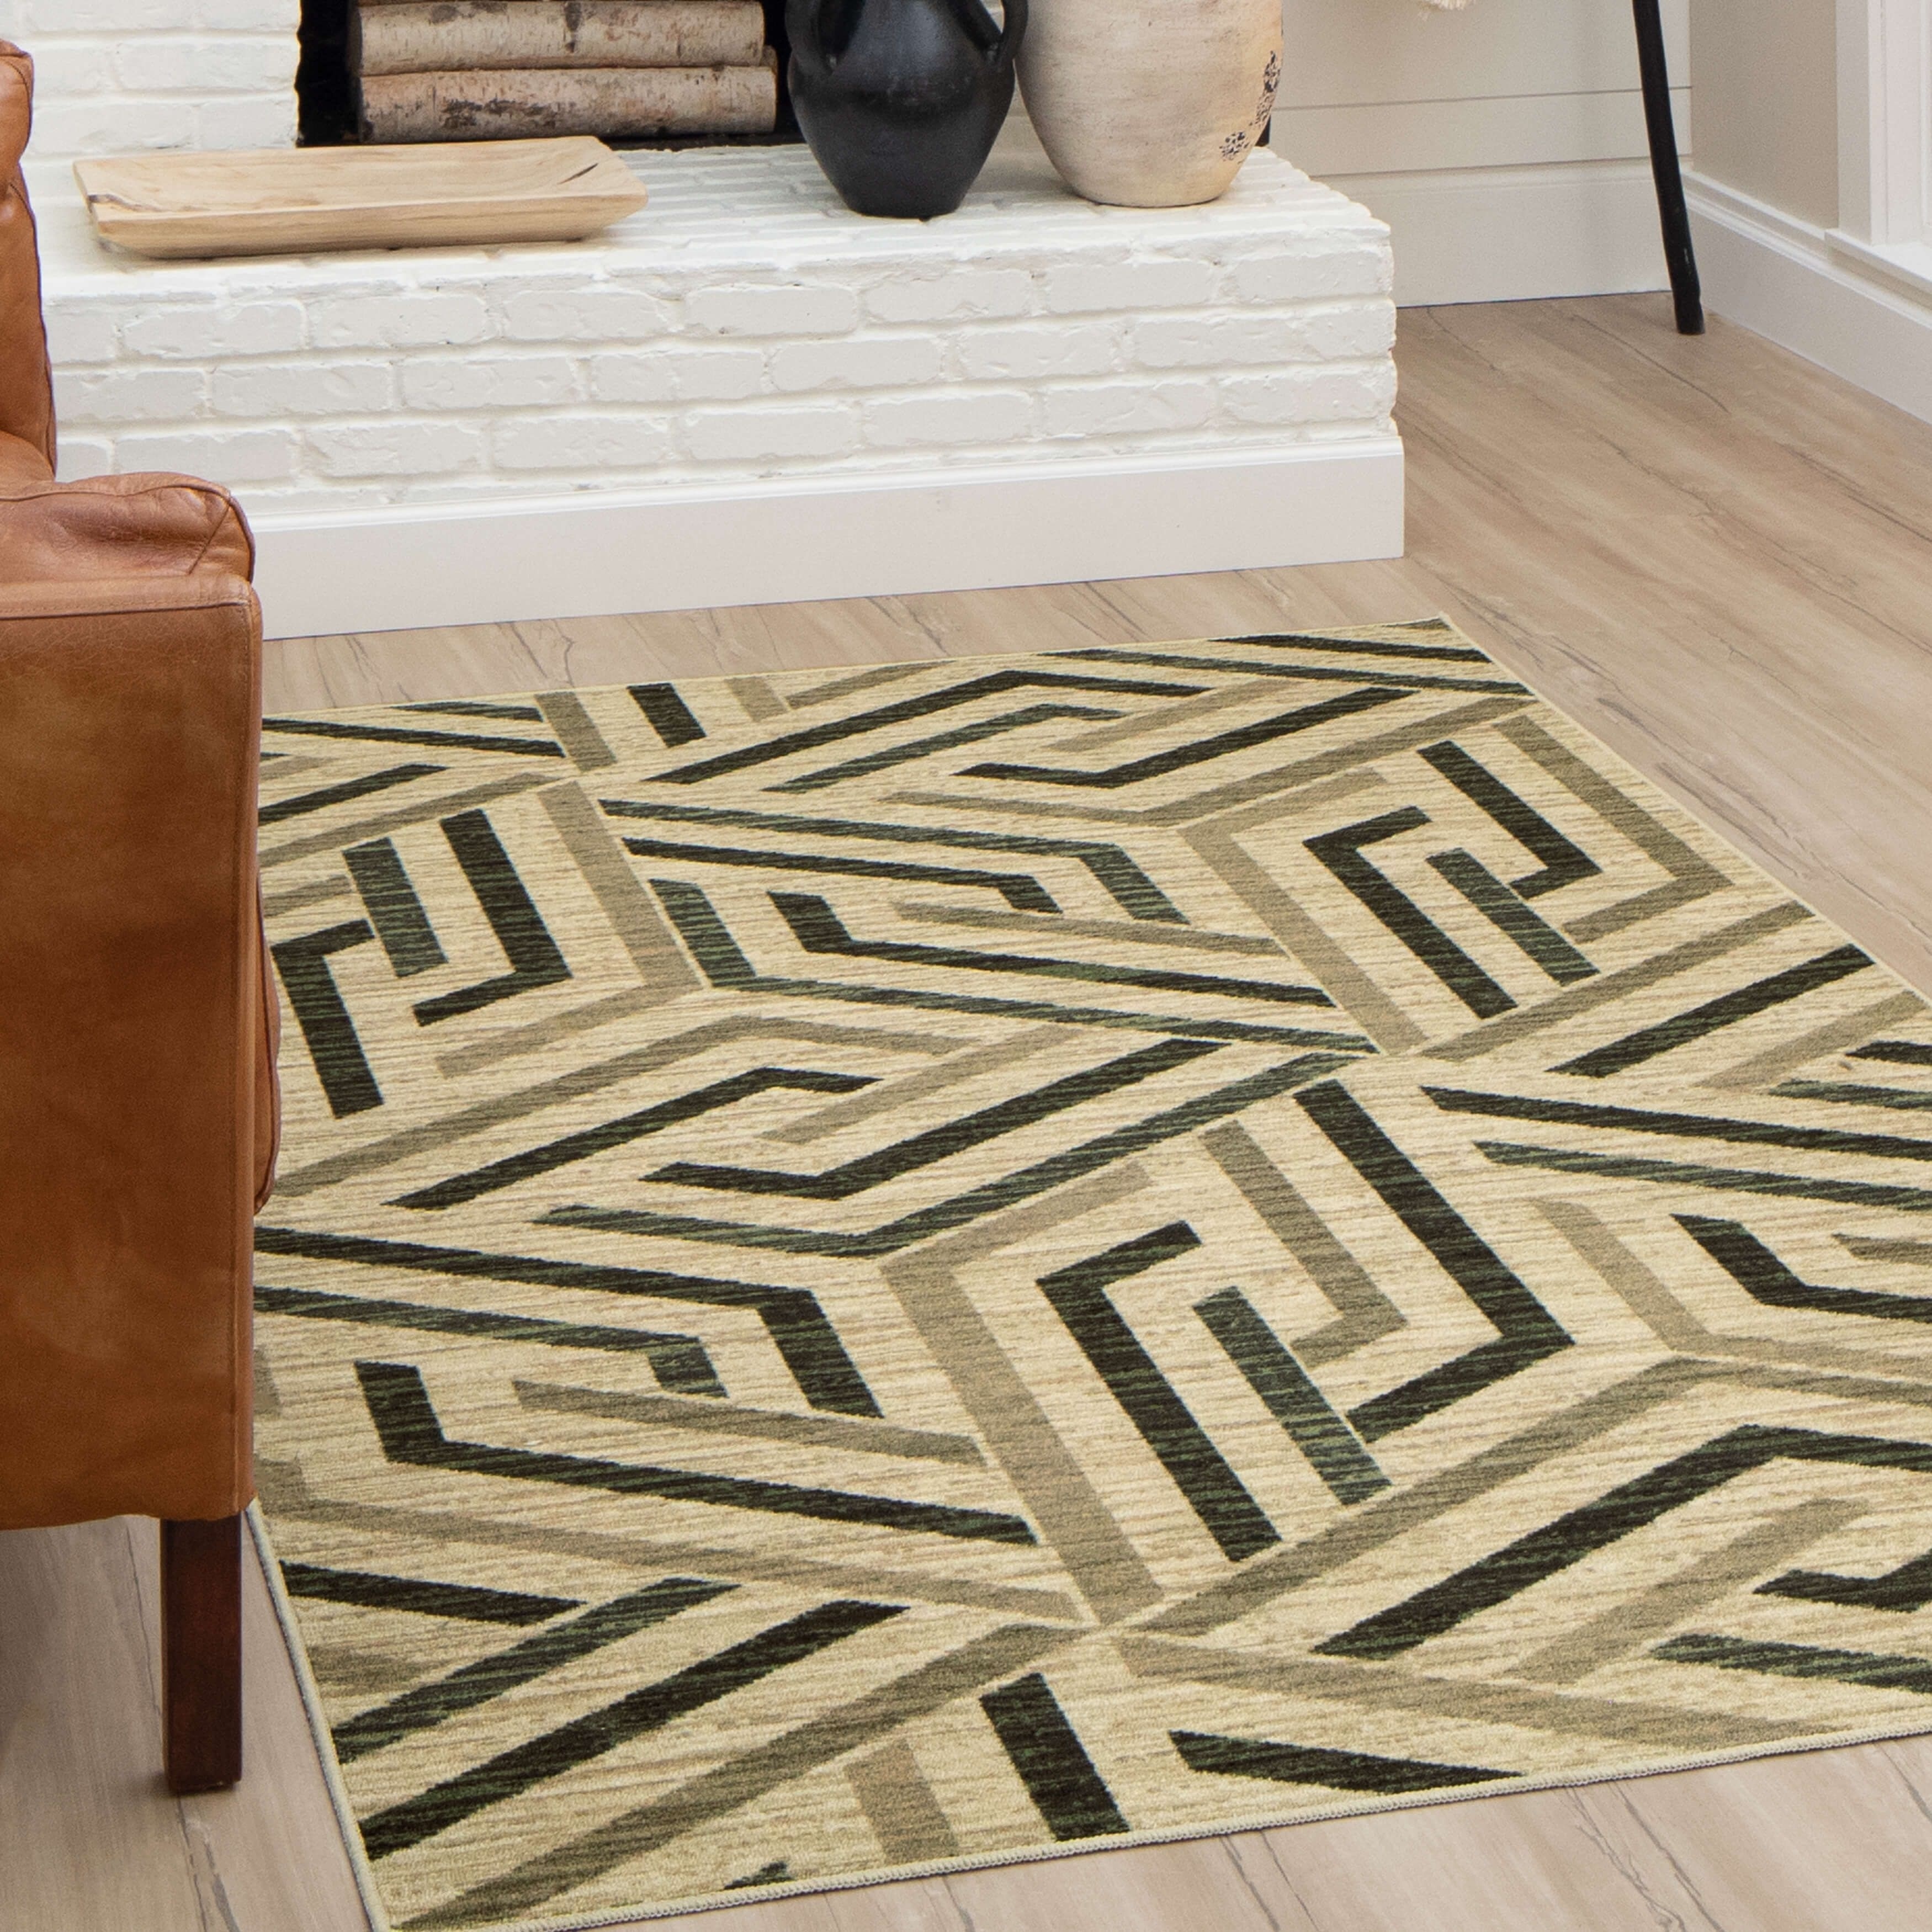 handmade Supreme carpet Bedroom Doorway mat Floor Area Rug Thick